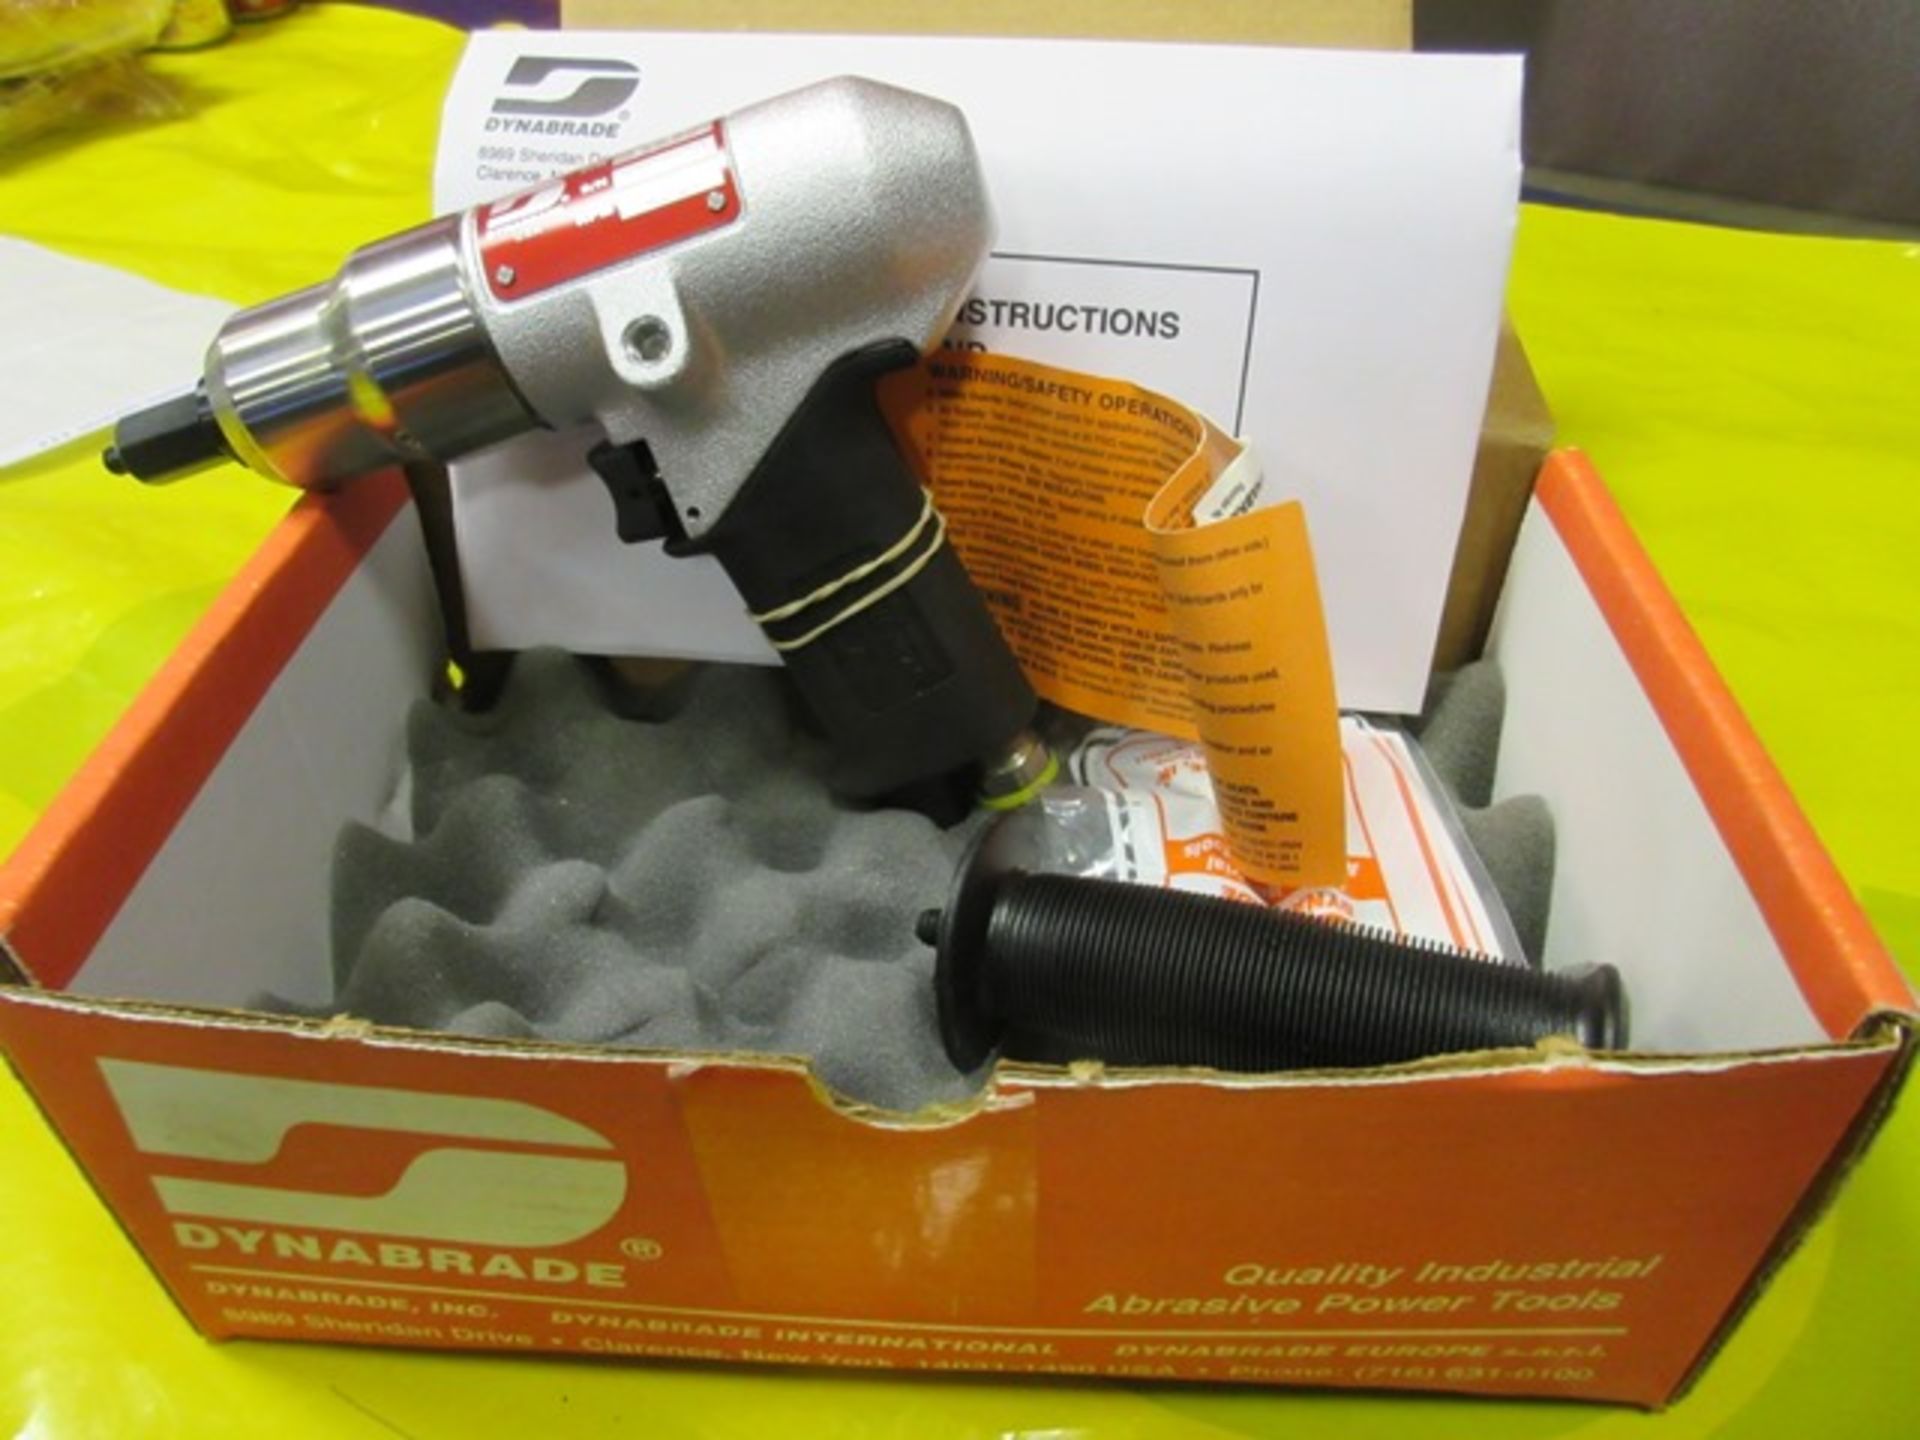 Dynabridge model BO304 pneumatic wrench - Image 2 of 2